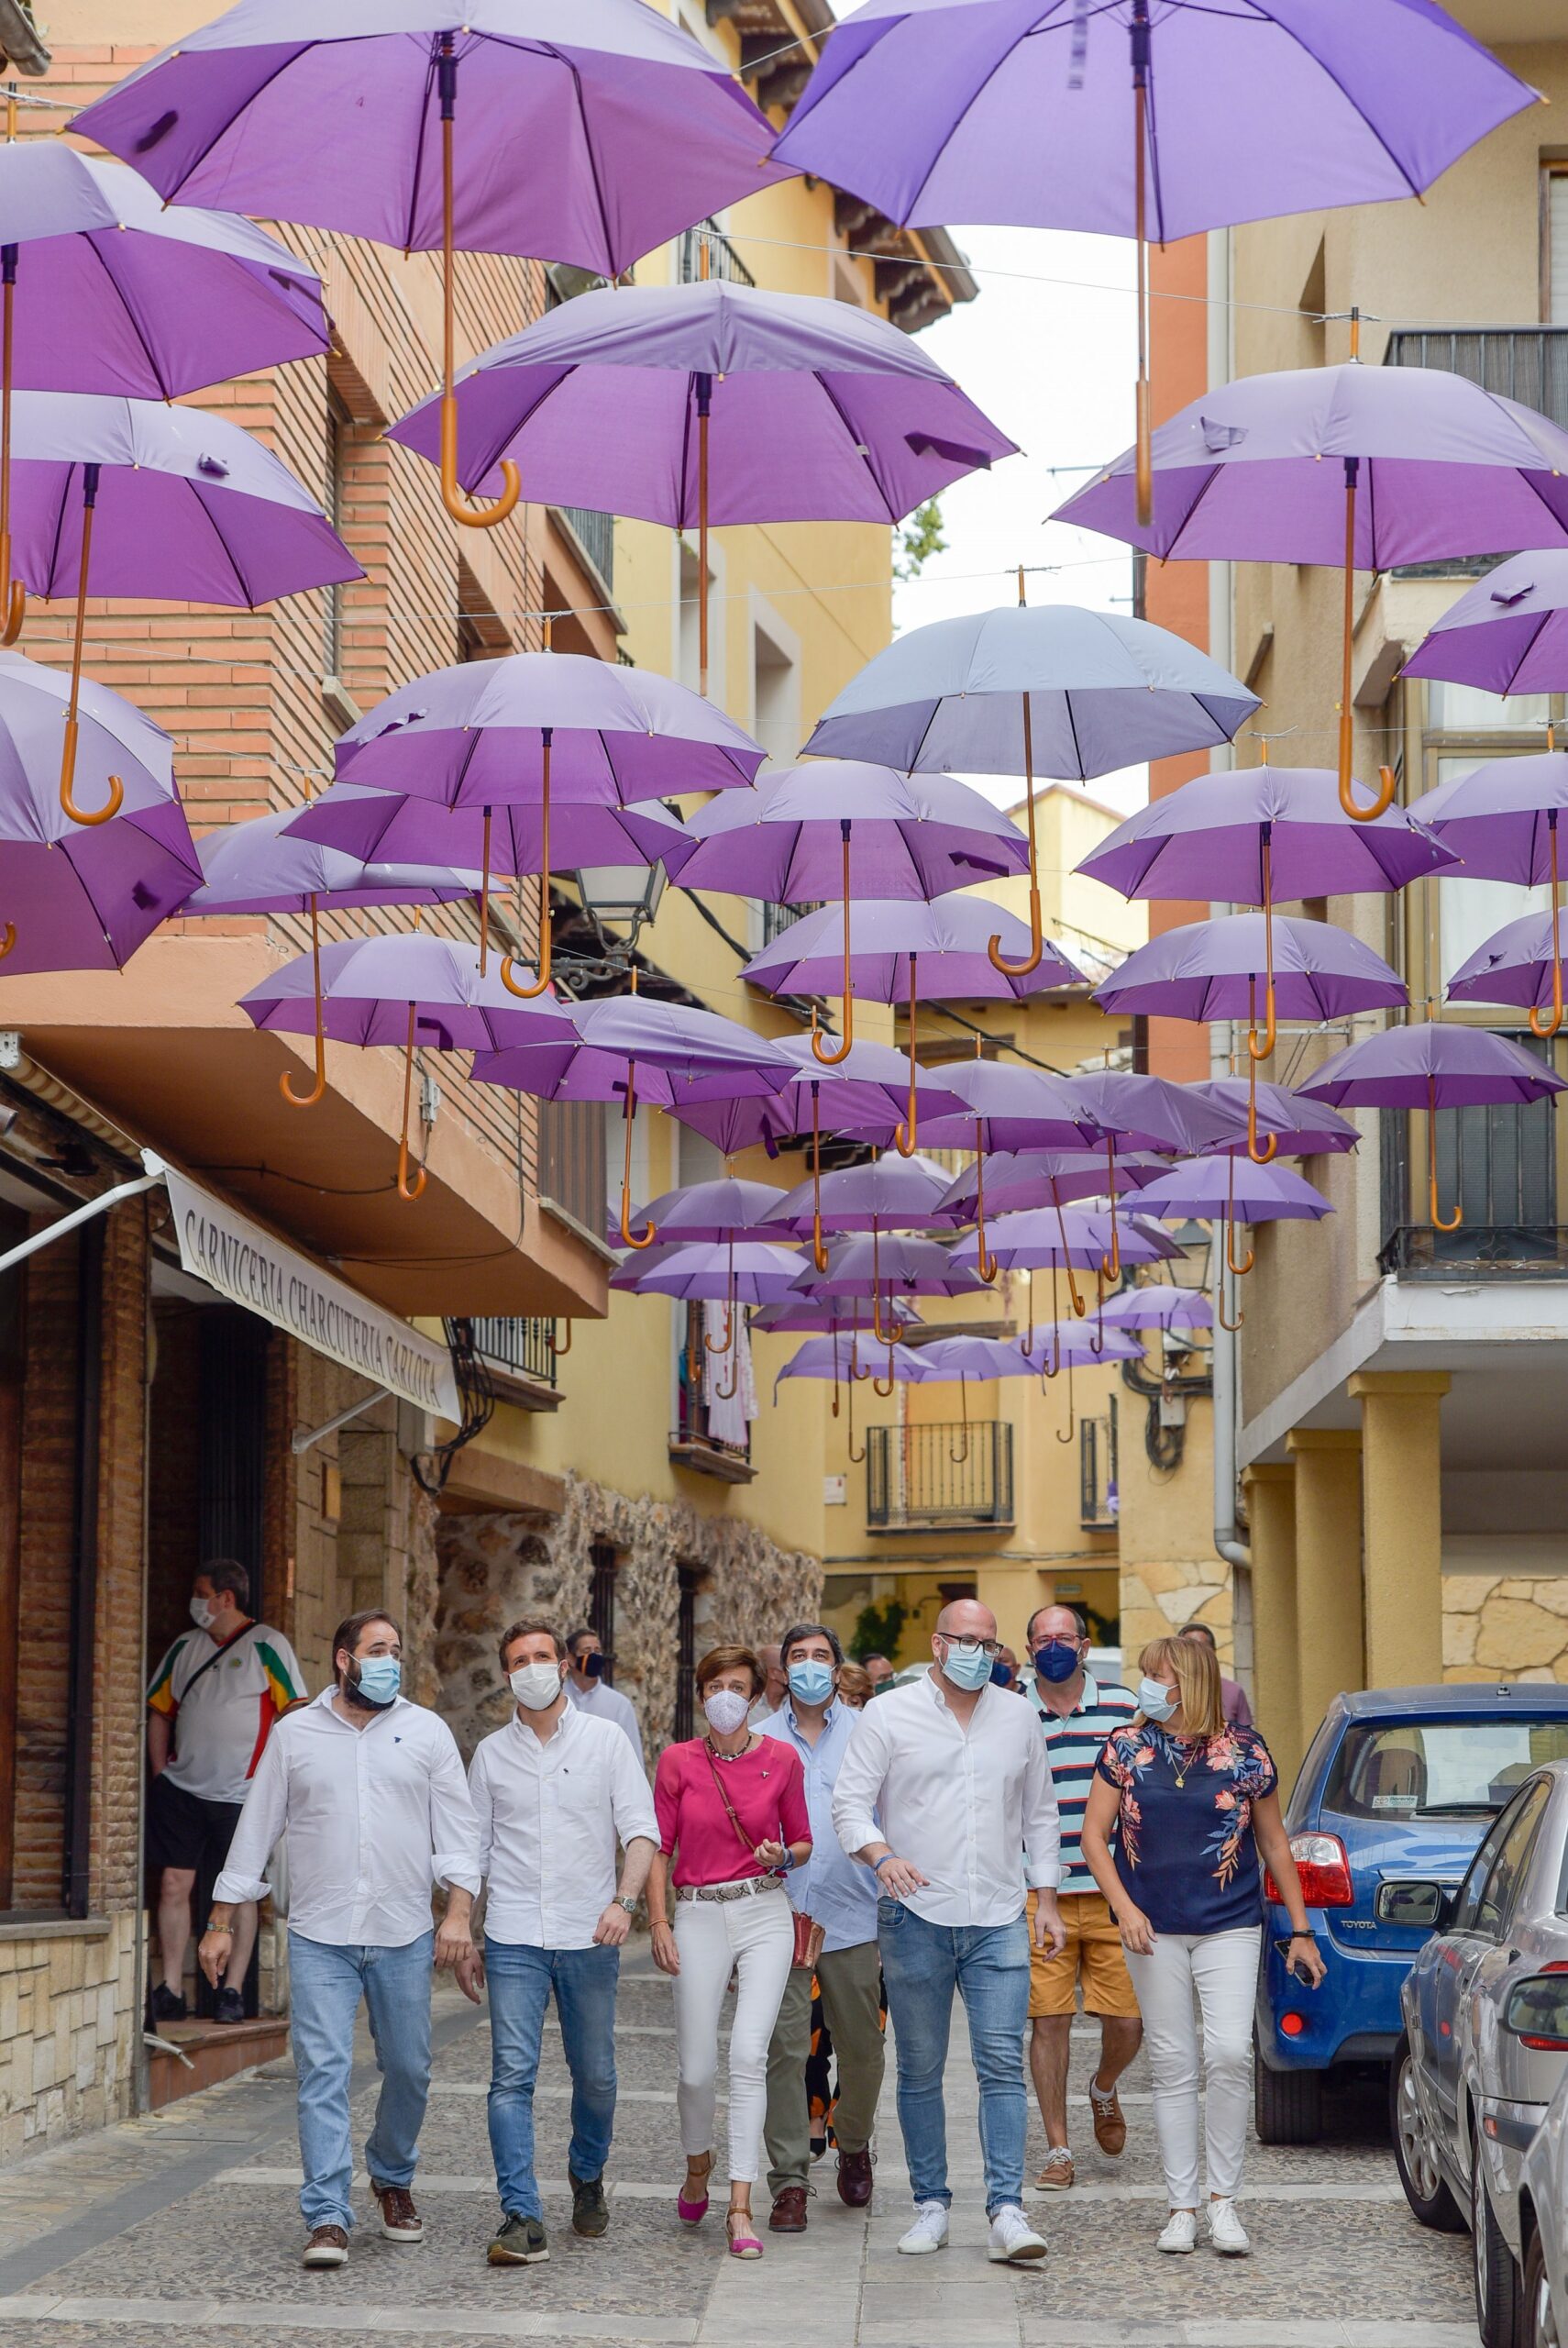 Pablo Casado y su comitiva en una de las calles de Brihuega, adornada con paraguas. (Foto: Rafa Martín/EP)